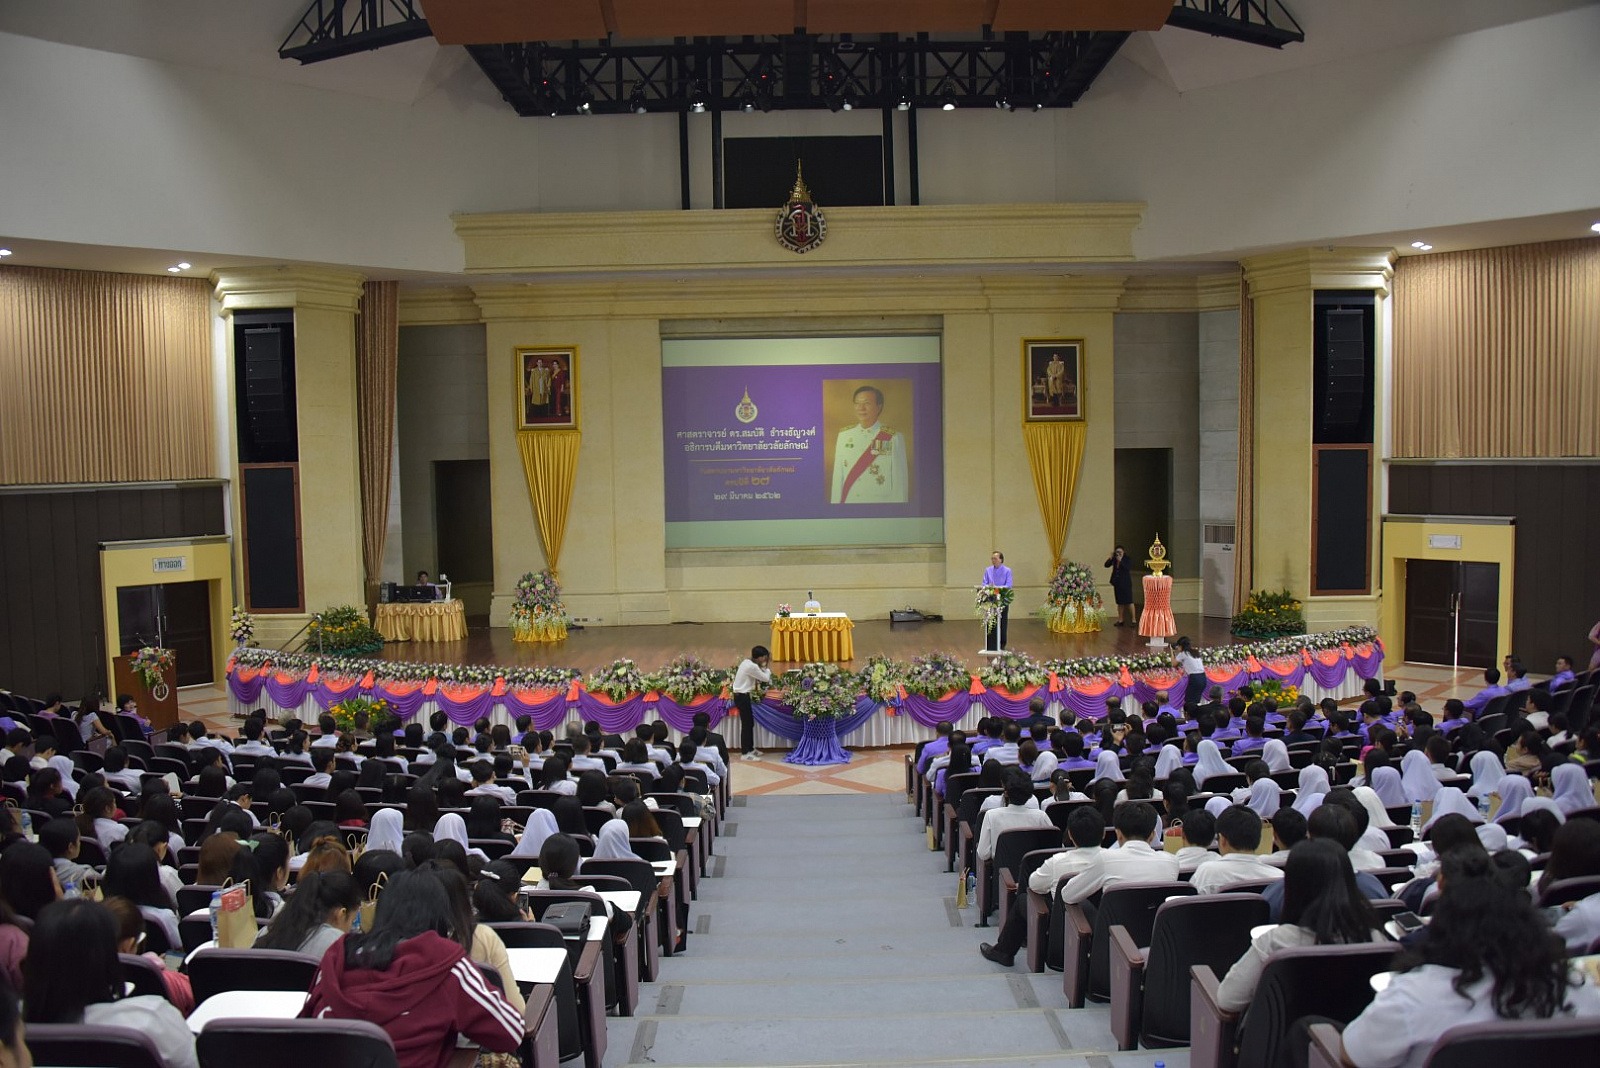 หอประชุมใหญ่อาคารไทยบุรี มหาวิทยาลัยวลัยลักษณ์ (อาคารเรียนรวม 4/ อาคาร 1,500)